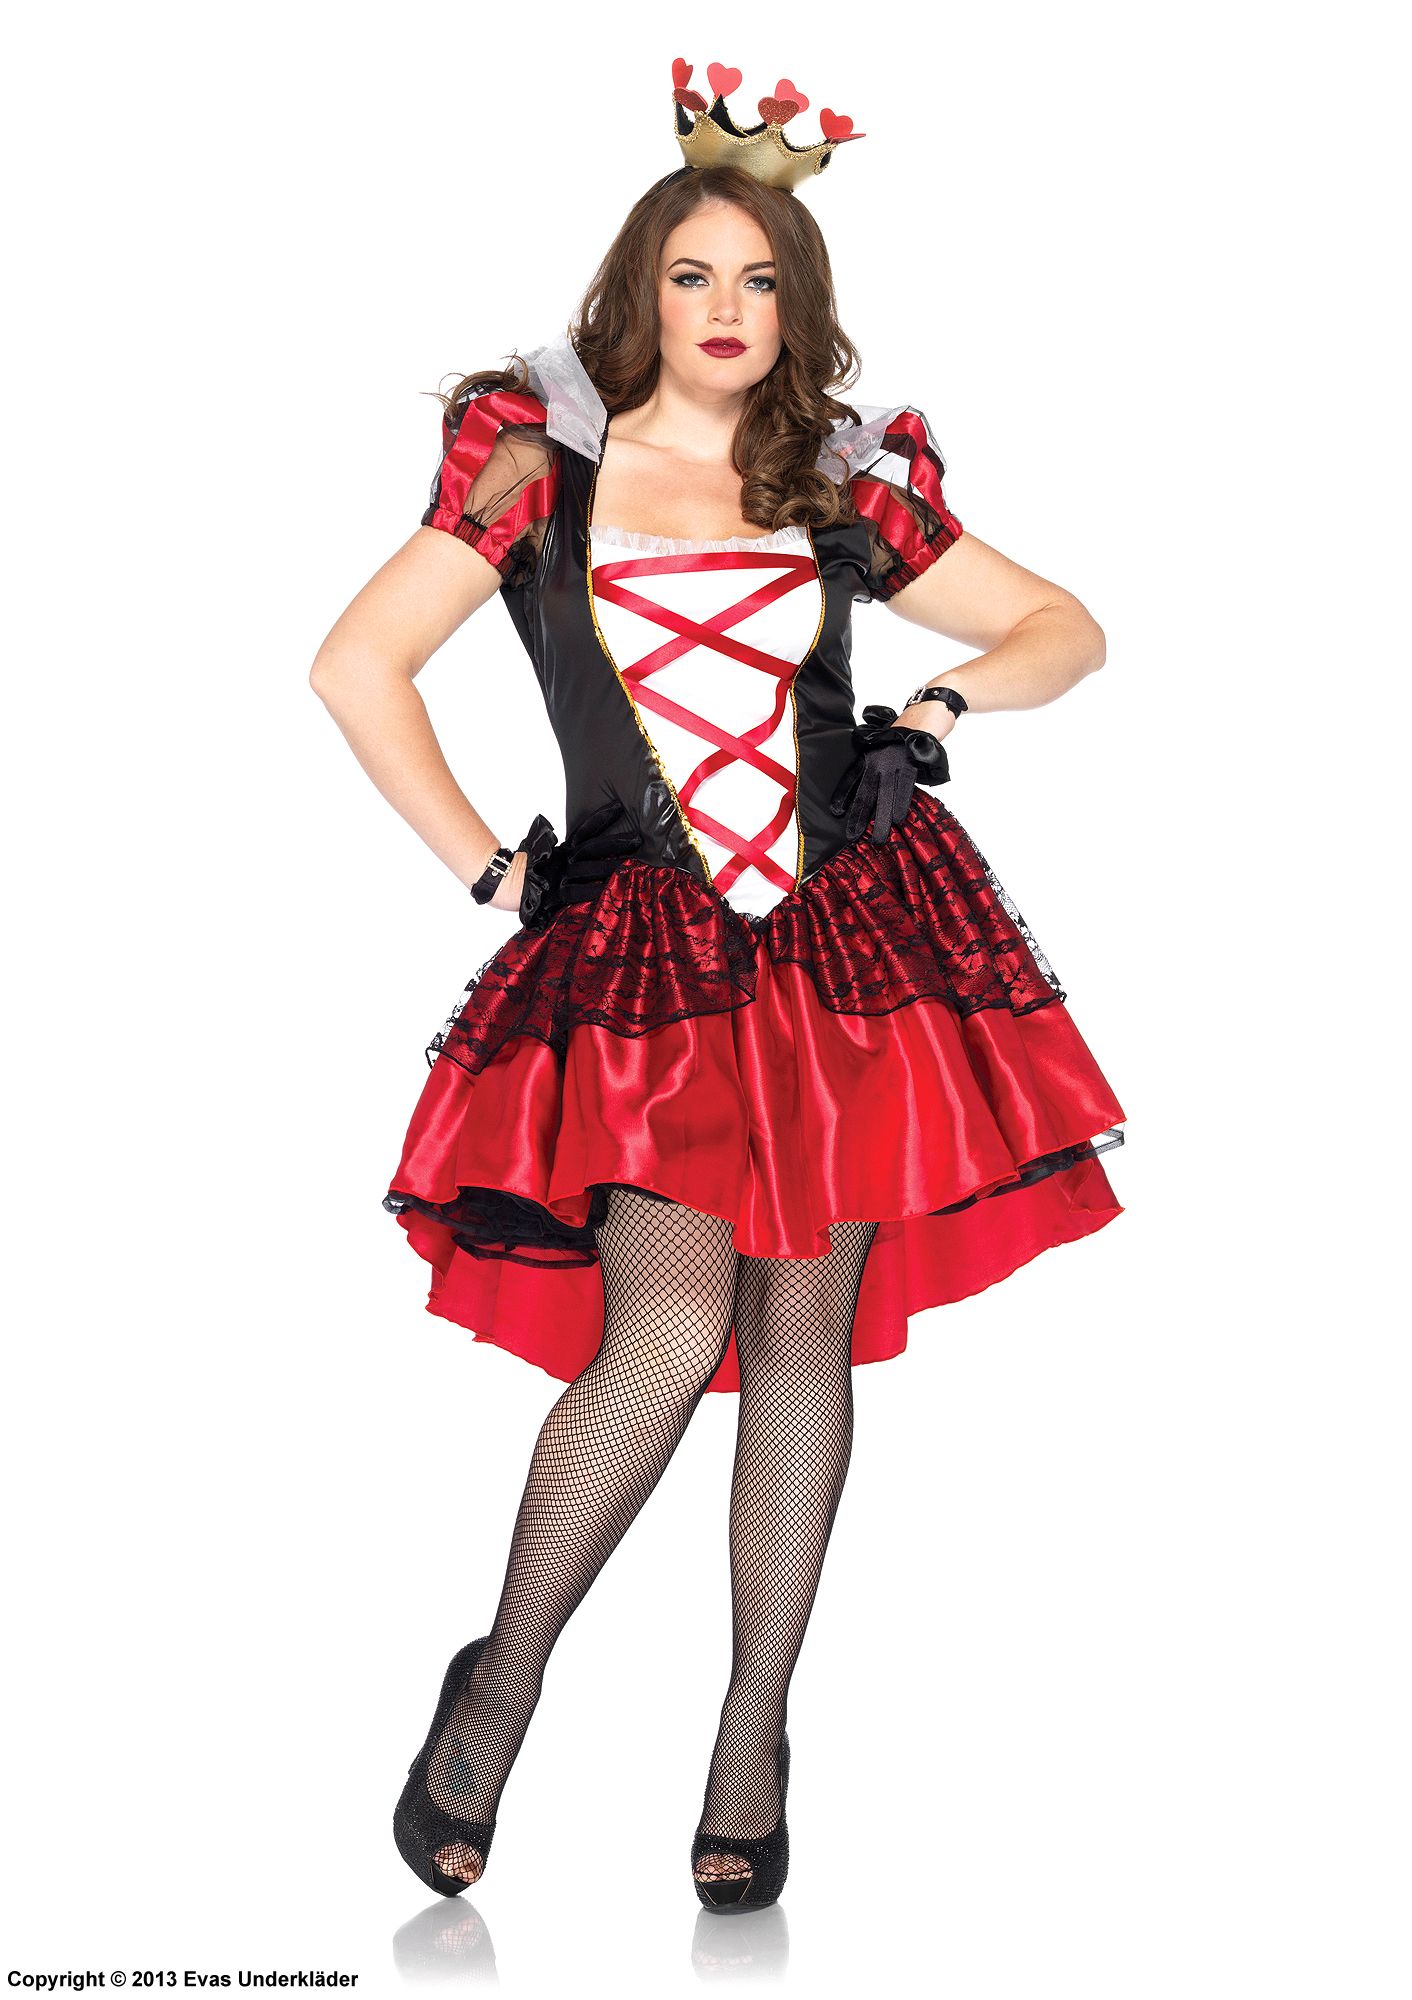 Rote Königin aus Alice im Wunderland, Kostüm-Kleid, Schnürung, Spitzenüberzug, Puffärmel, XL bis 4XL